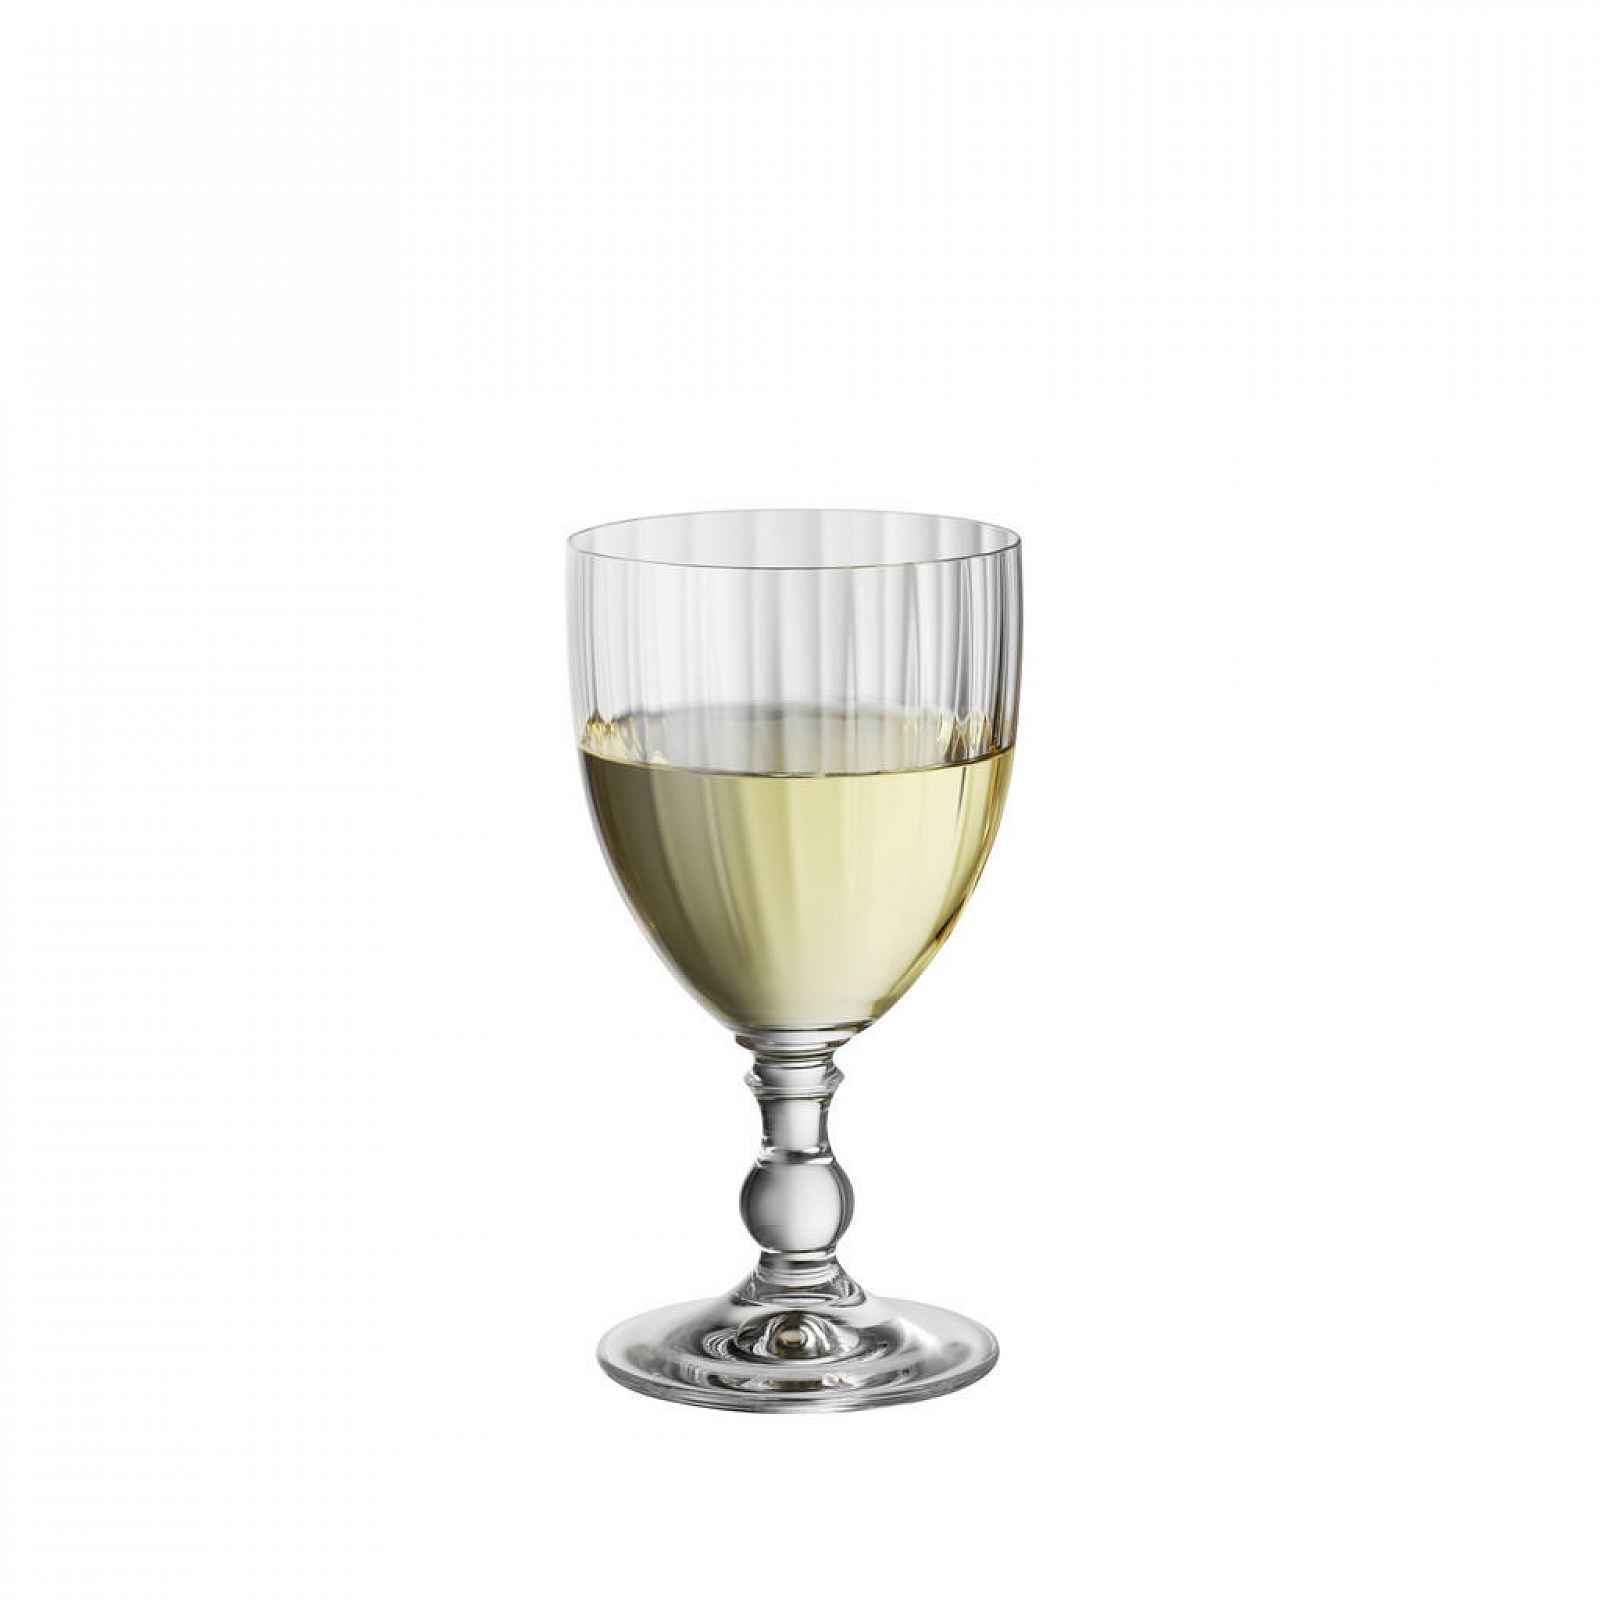 Bohemia SKLENICE NA BÍLÉ VÍNO - Sklenice na bílé víno - 003280024202